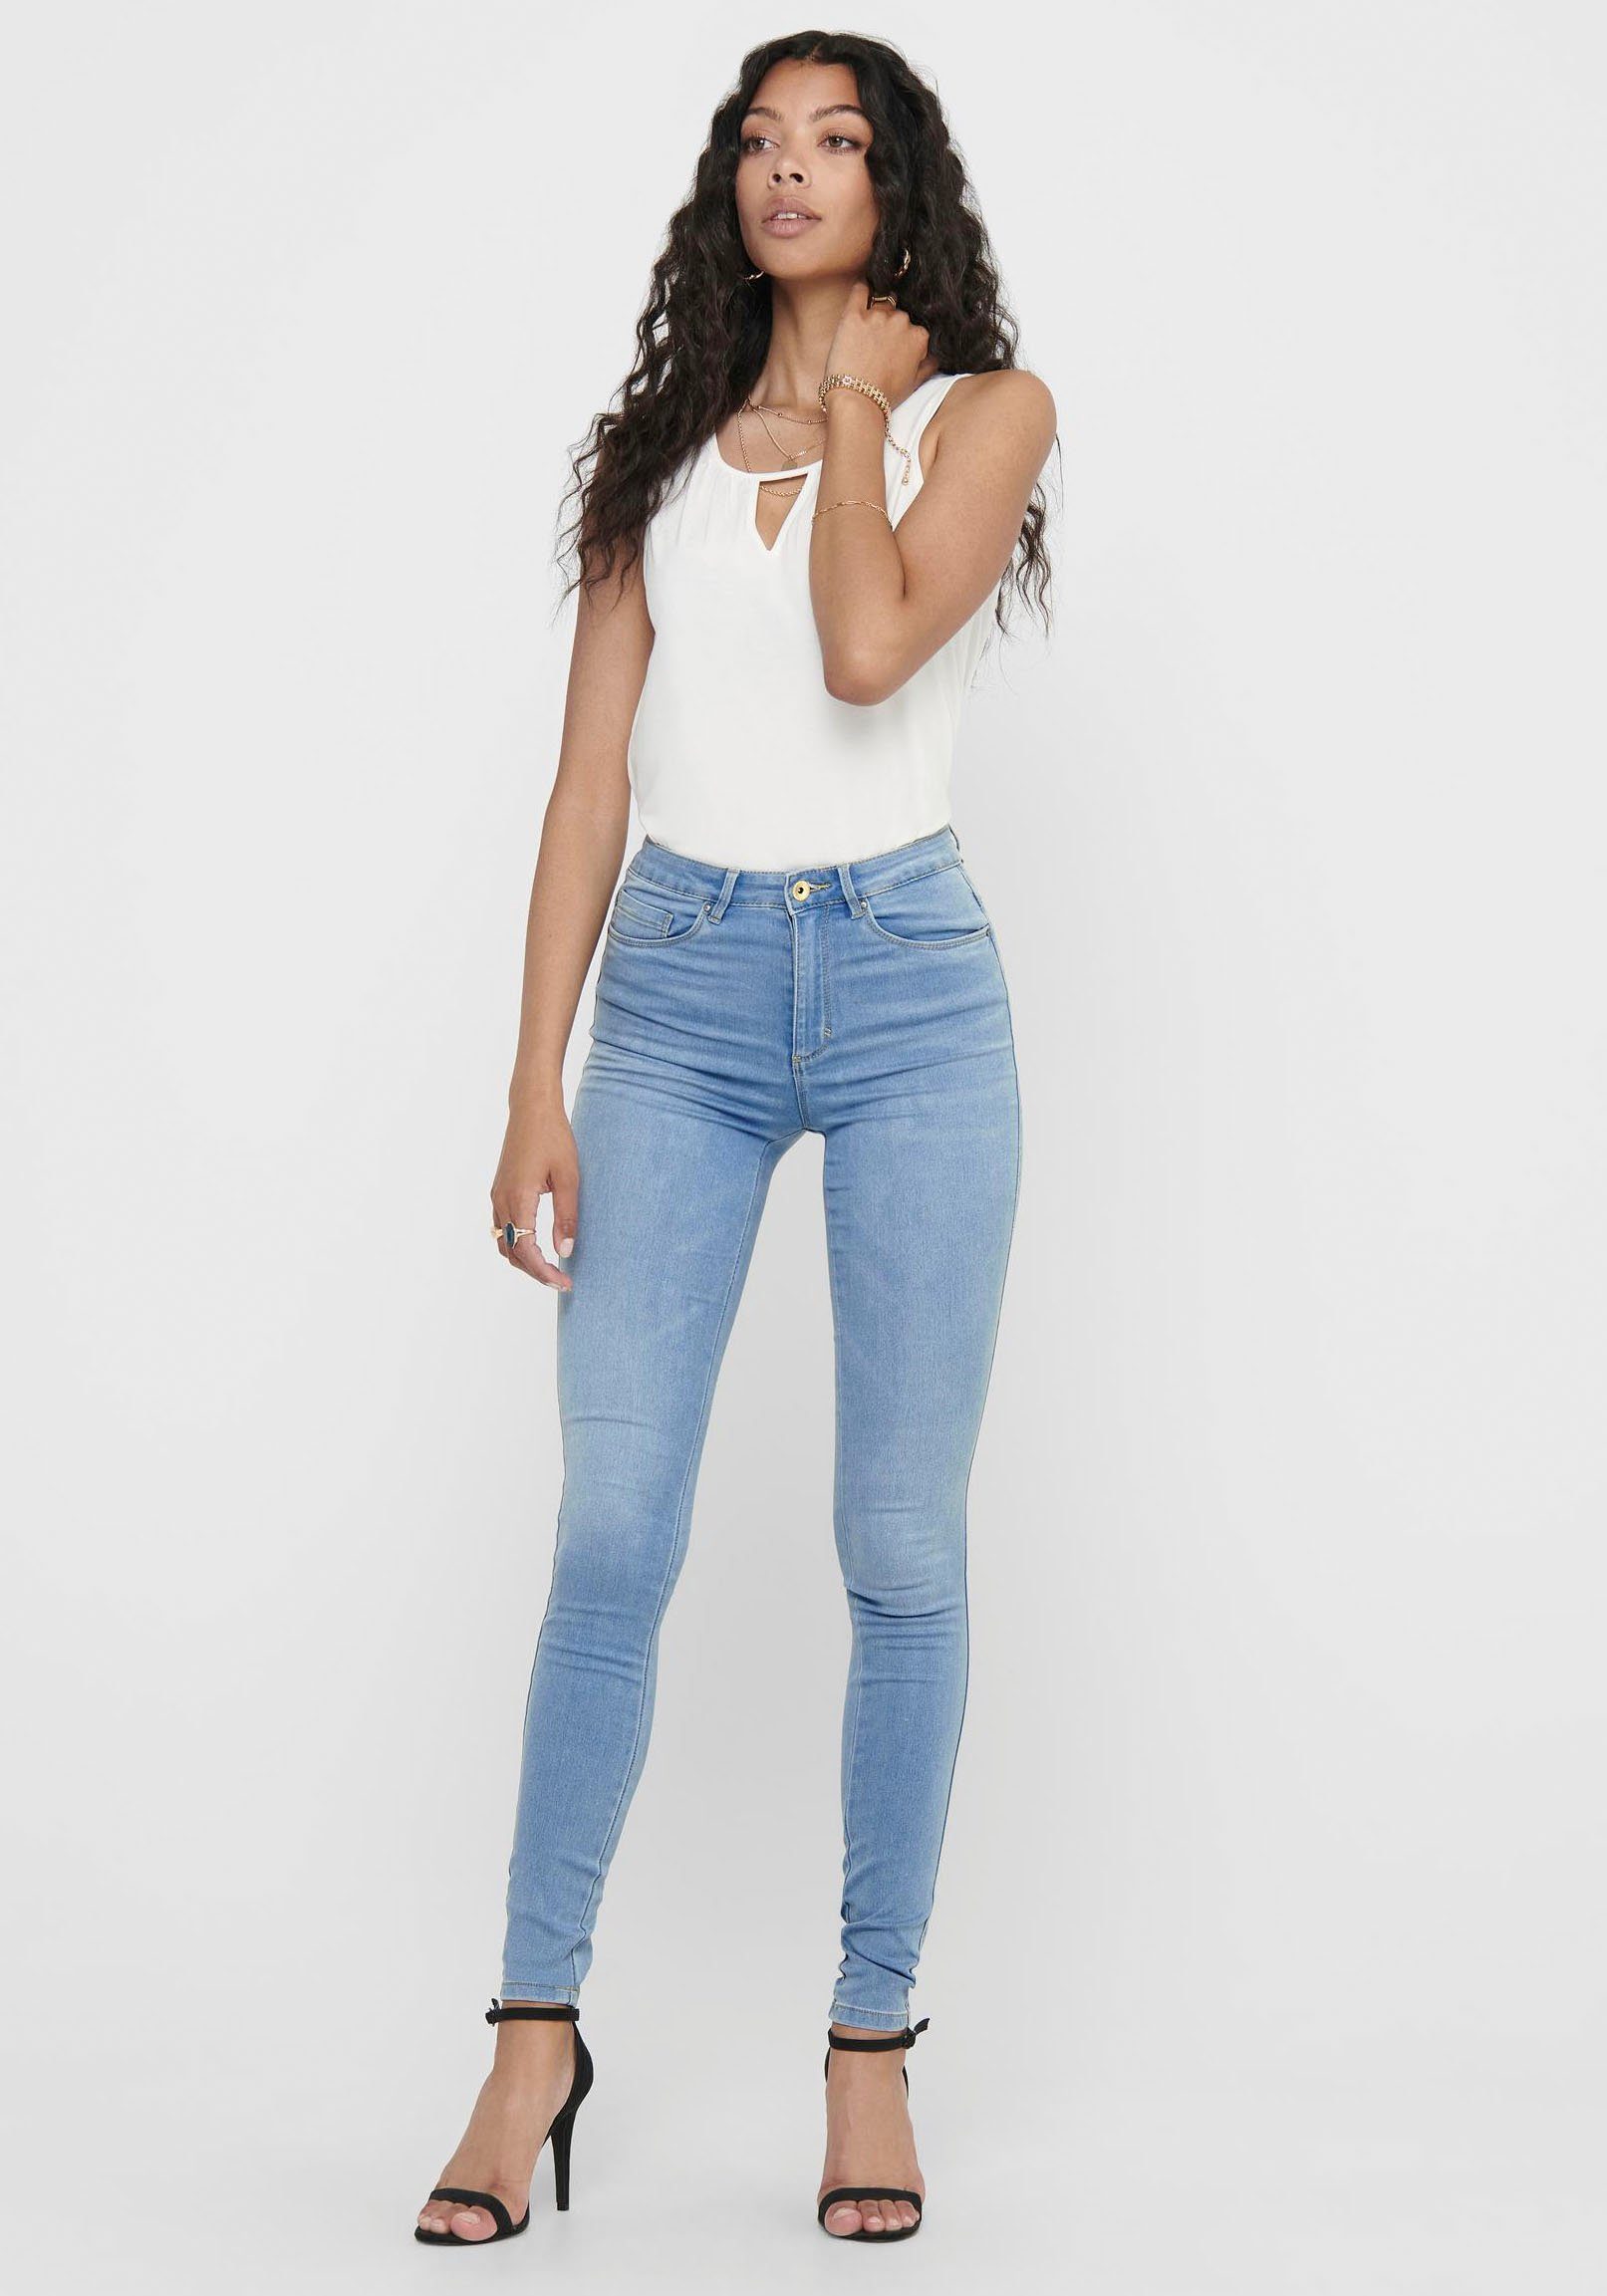 High waist jeans